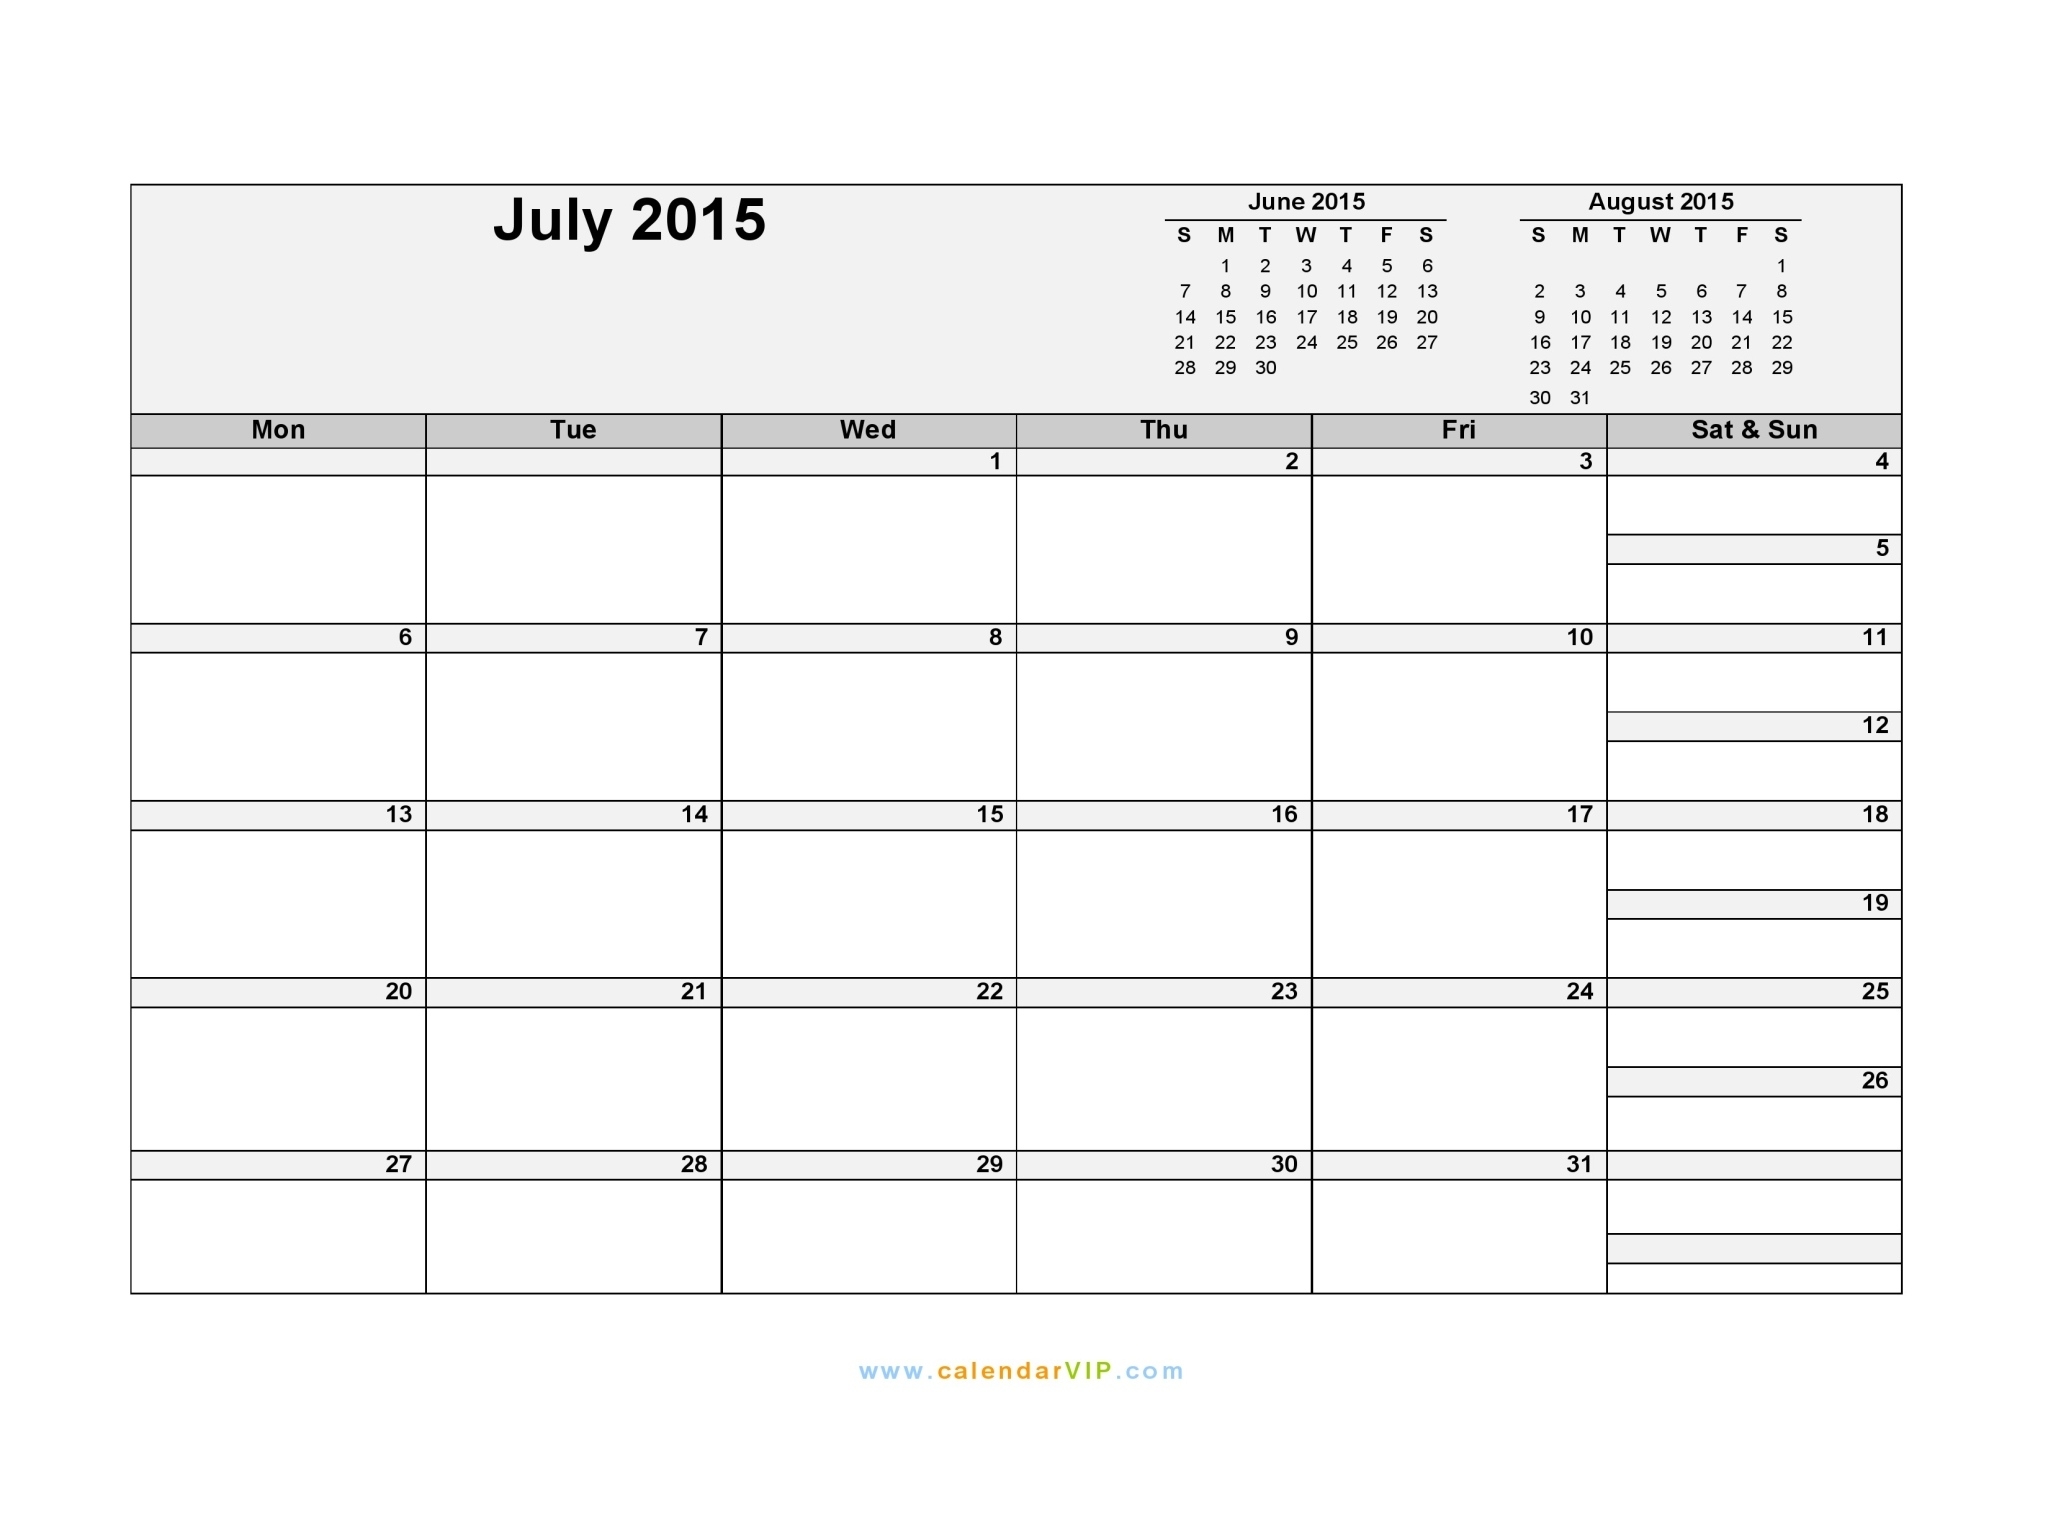 July 2015 Calendar - Blank Printable Calendar Template In Pdf Word Excel Impressive Blank Calendar 4 Weeks